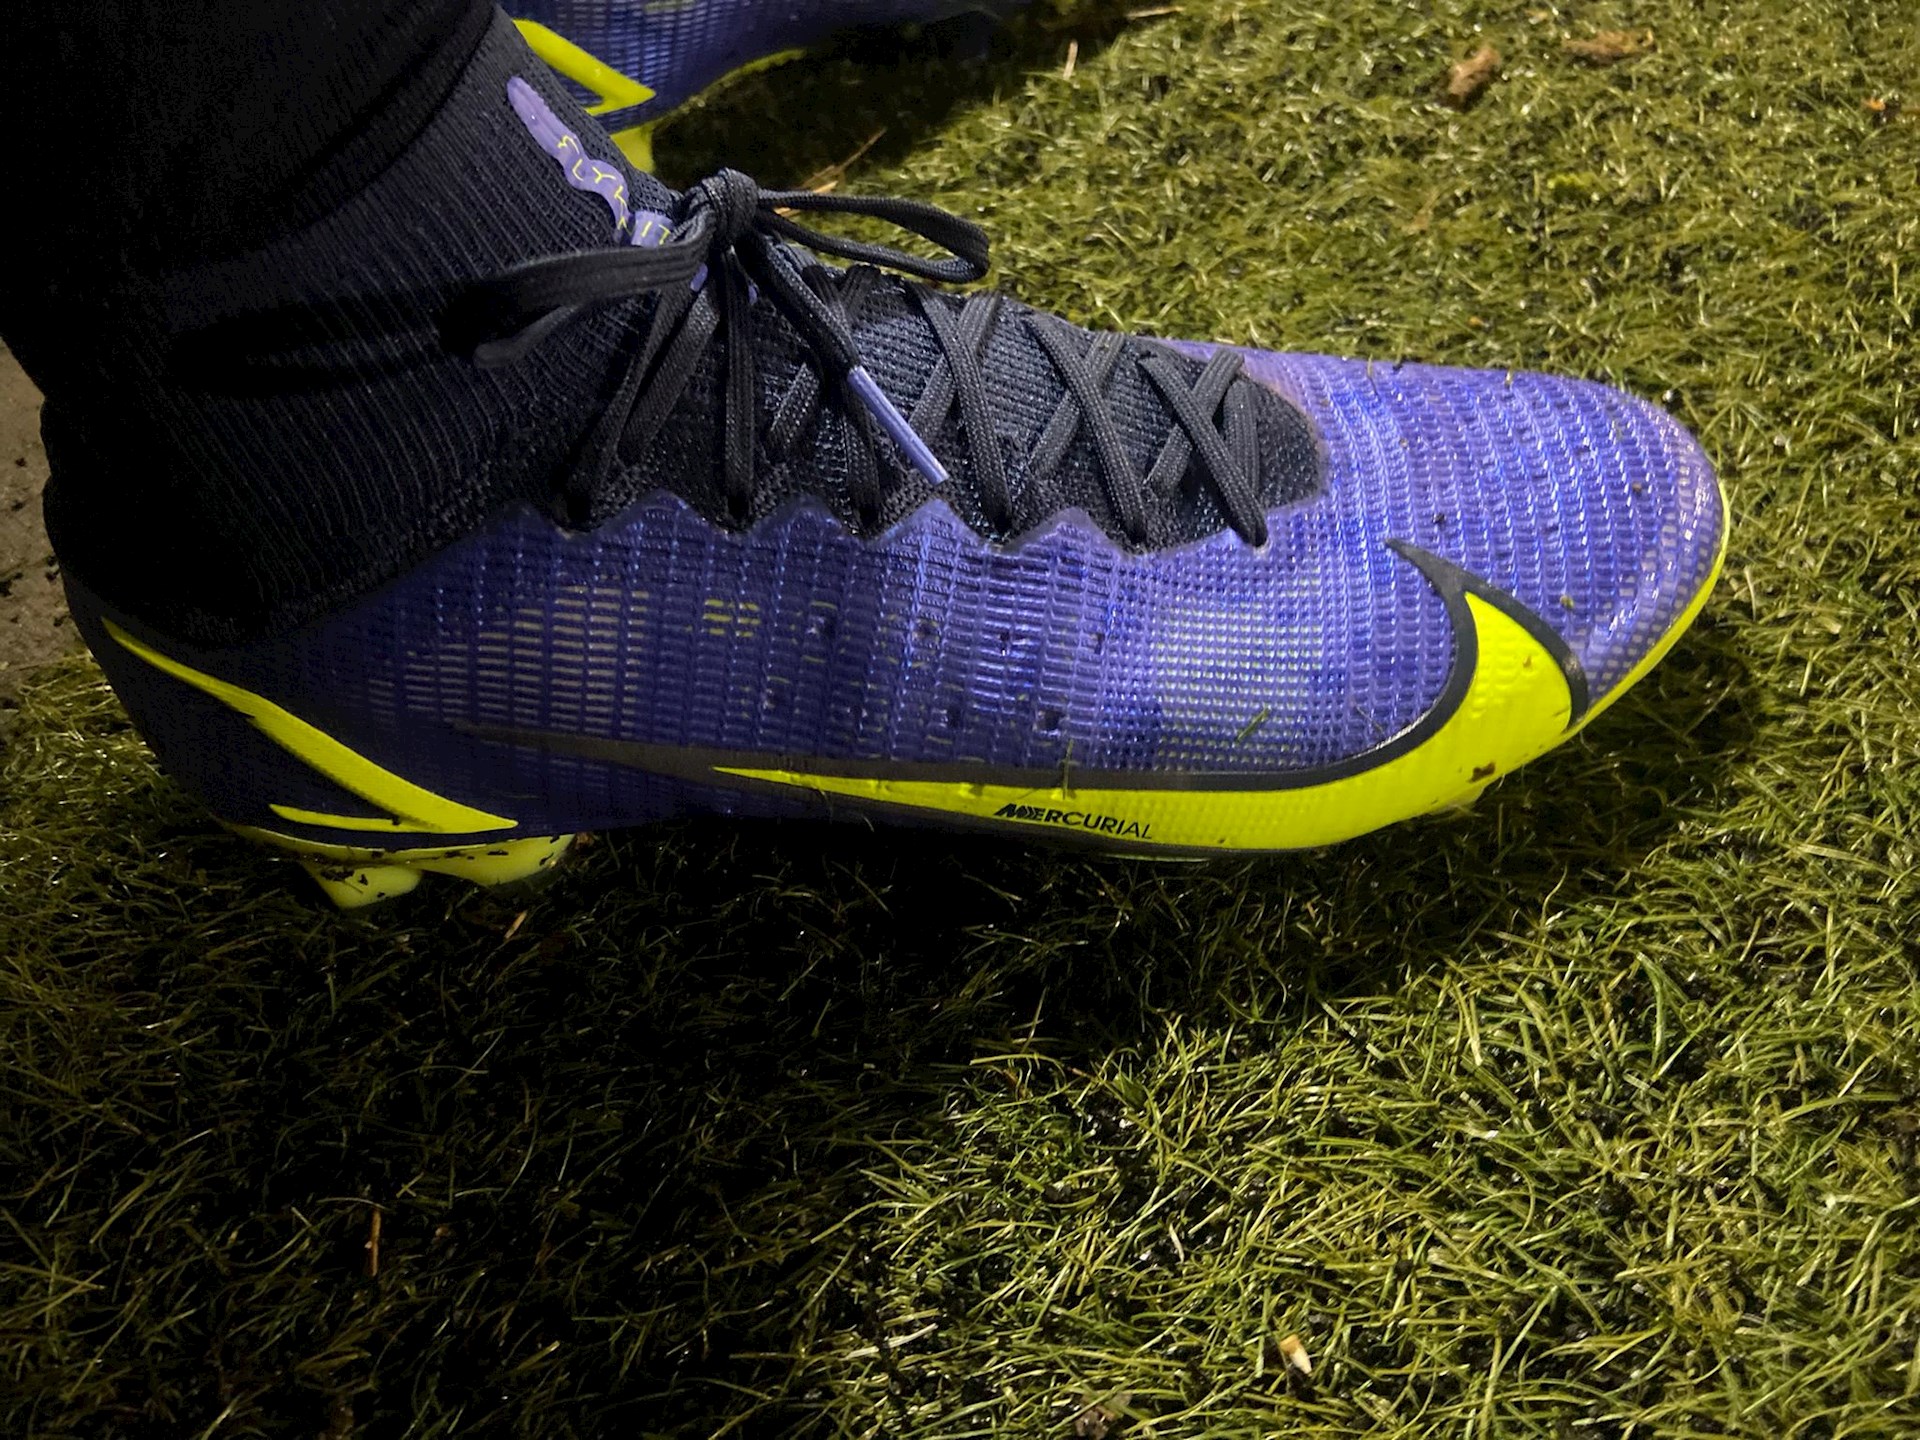 vluchtelingen beet gewicht Blauwe Nike Mercurial Superfly en Mercurial voetbalschoene -  Voetbal-schoenen.eu